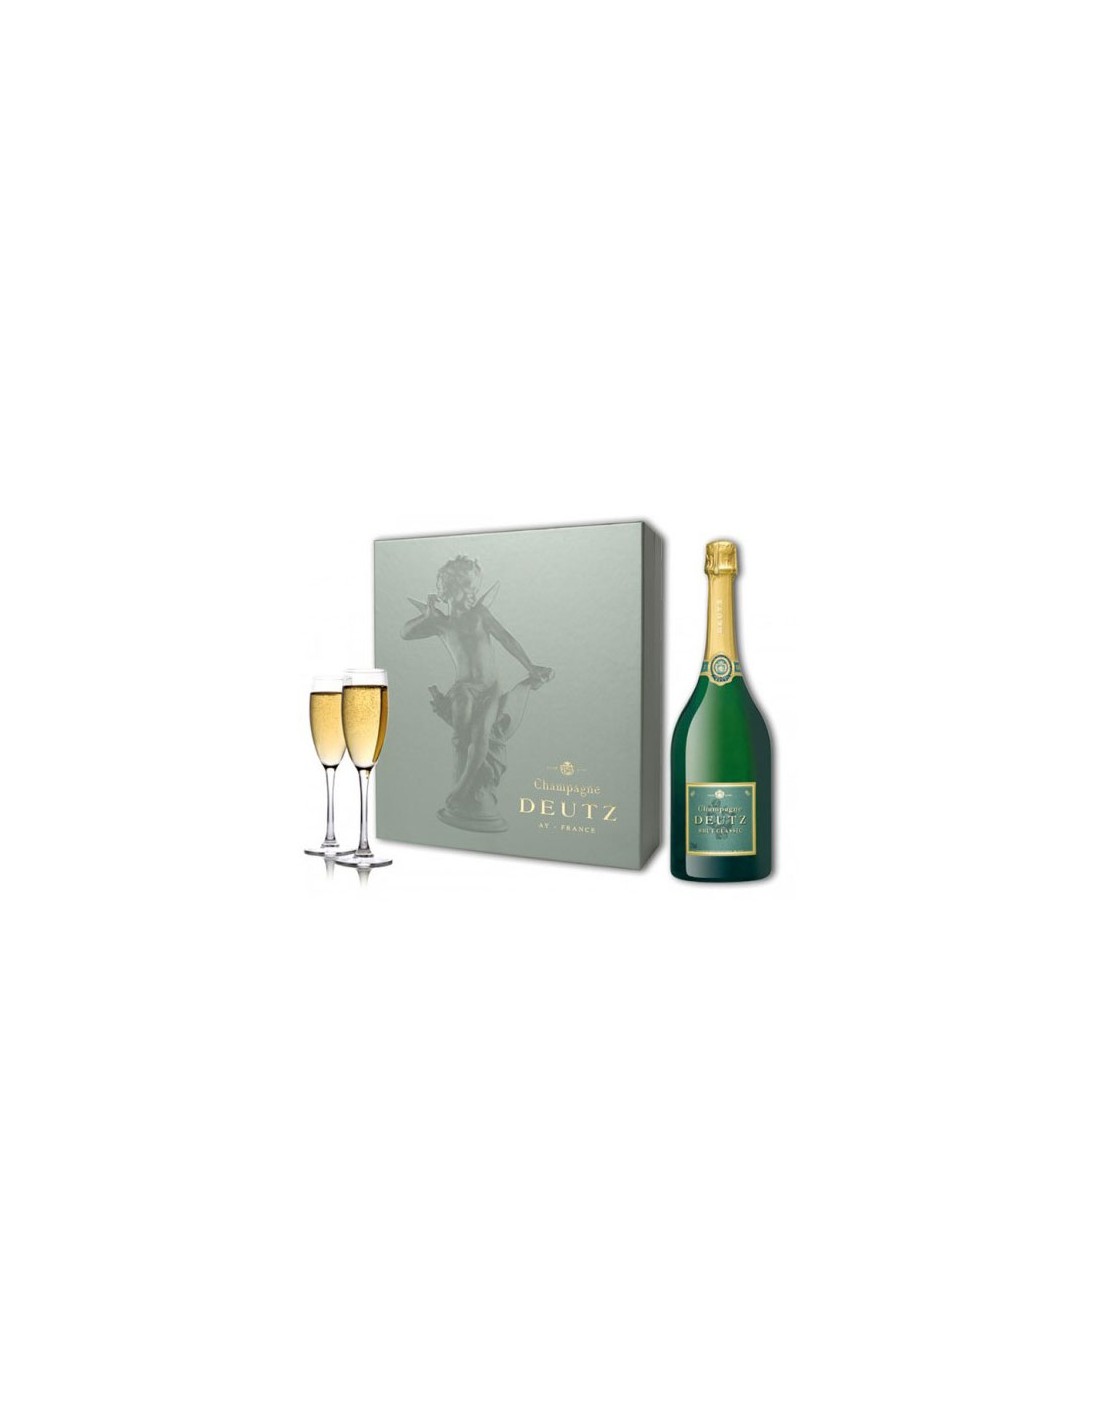 Deutz coffret Champagne Deutz, Brut Rosé et Brut Classic meilleur prix